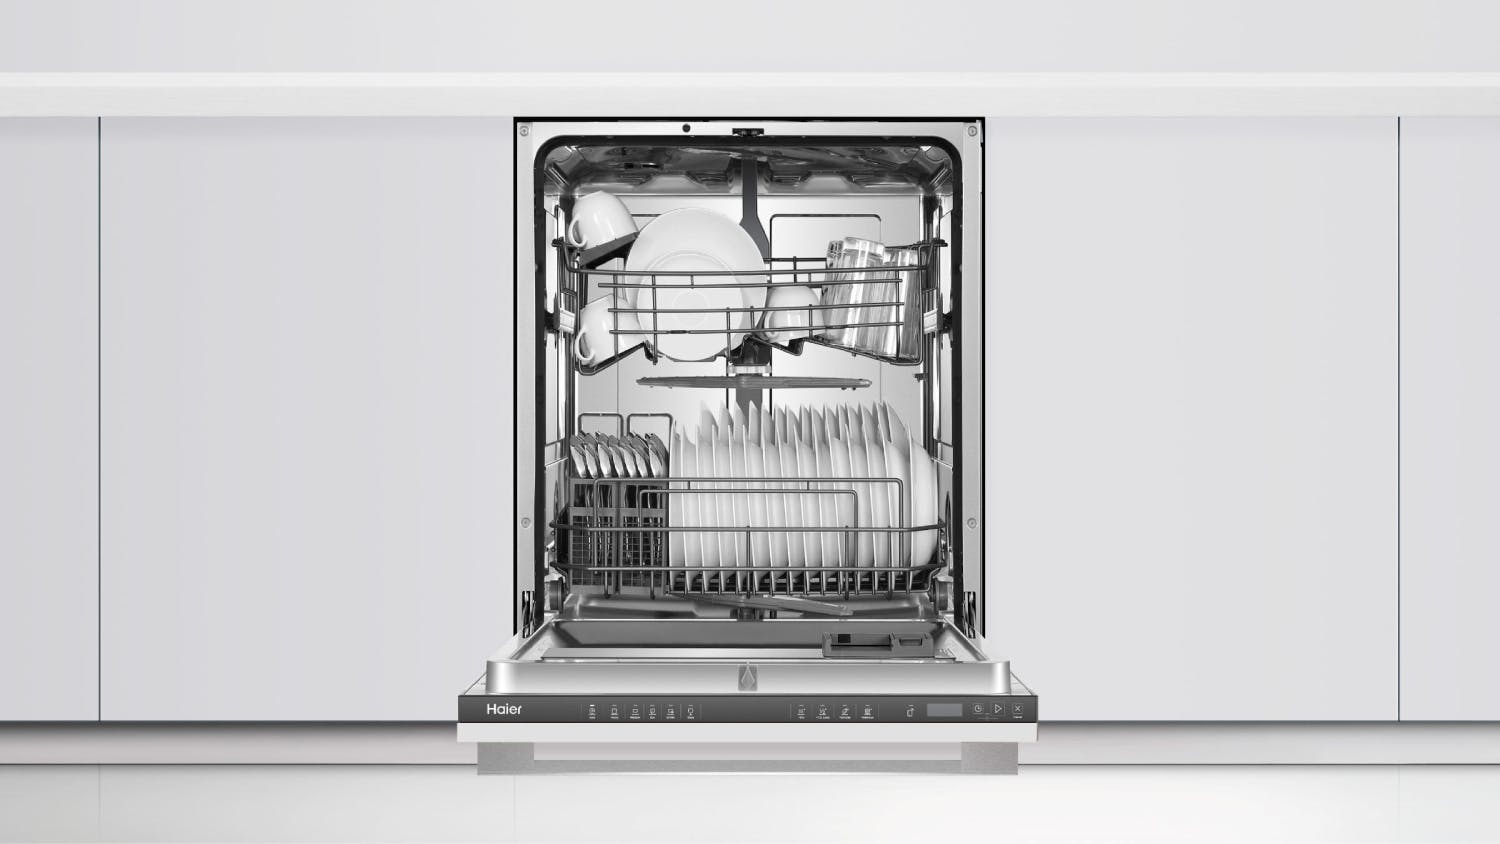 Haier 15 Place Setting 6 Program Fully Integrated Dishwasher - Panel Ready (HDW15U2I1)